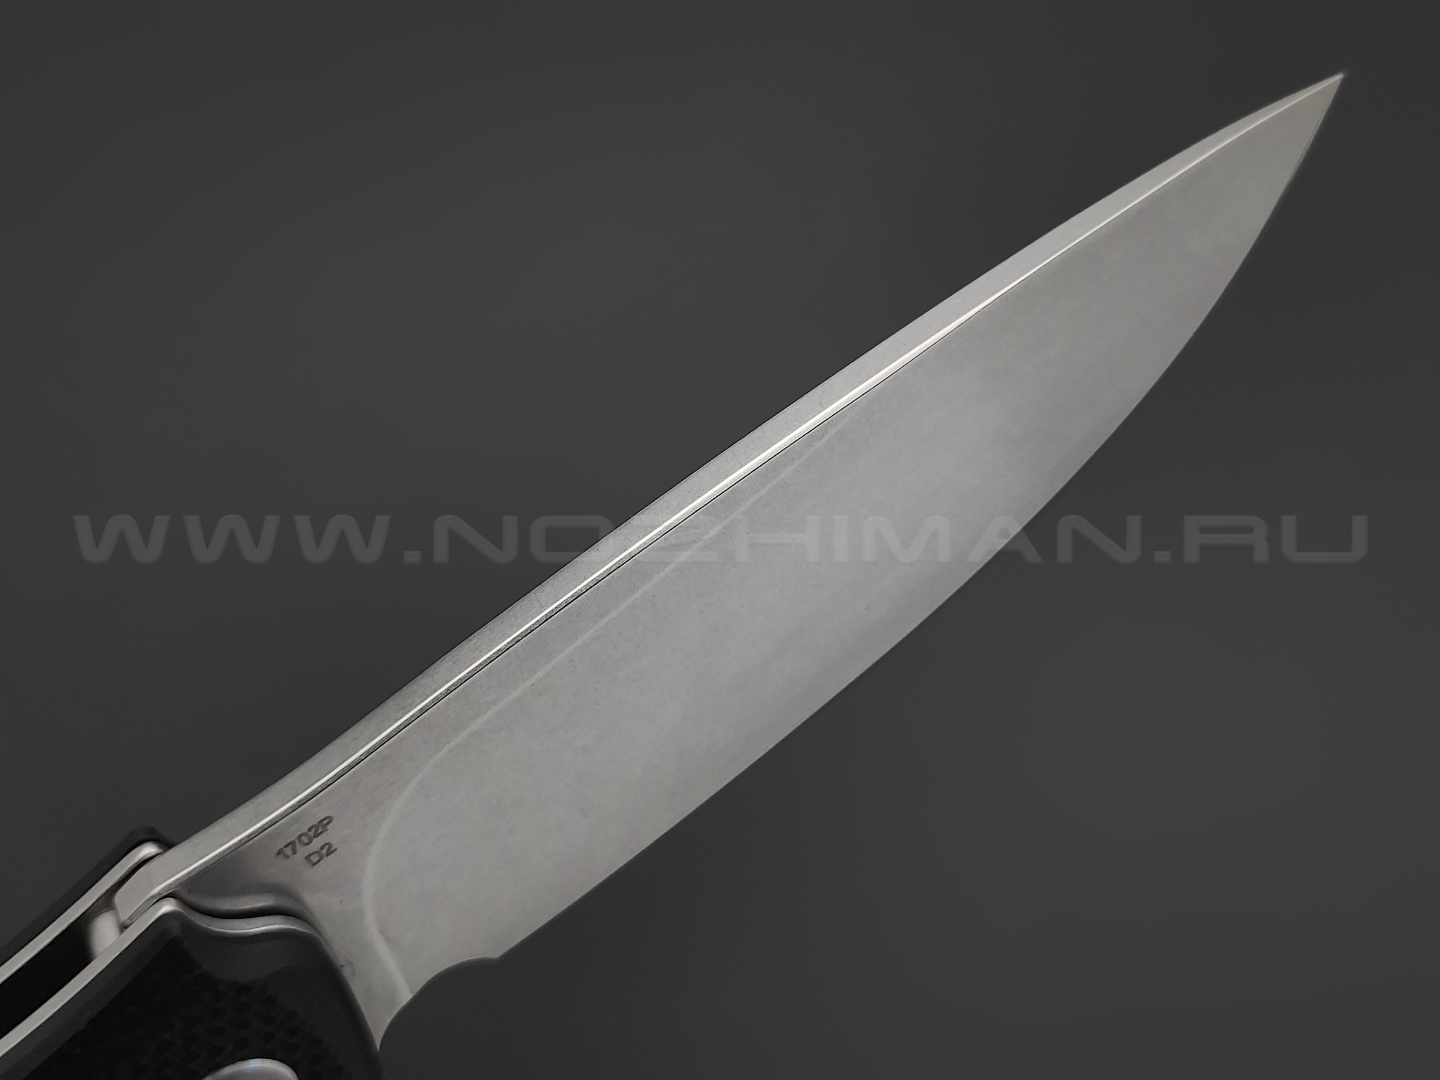 Нож Artisan Cutlery Tradition 1702P-BK сталь D2, рукоять G10 black